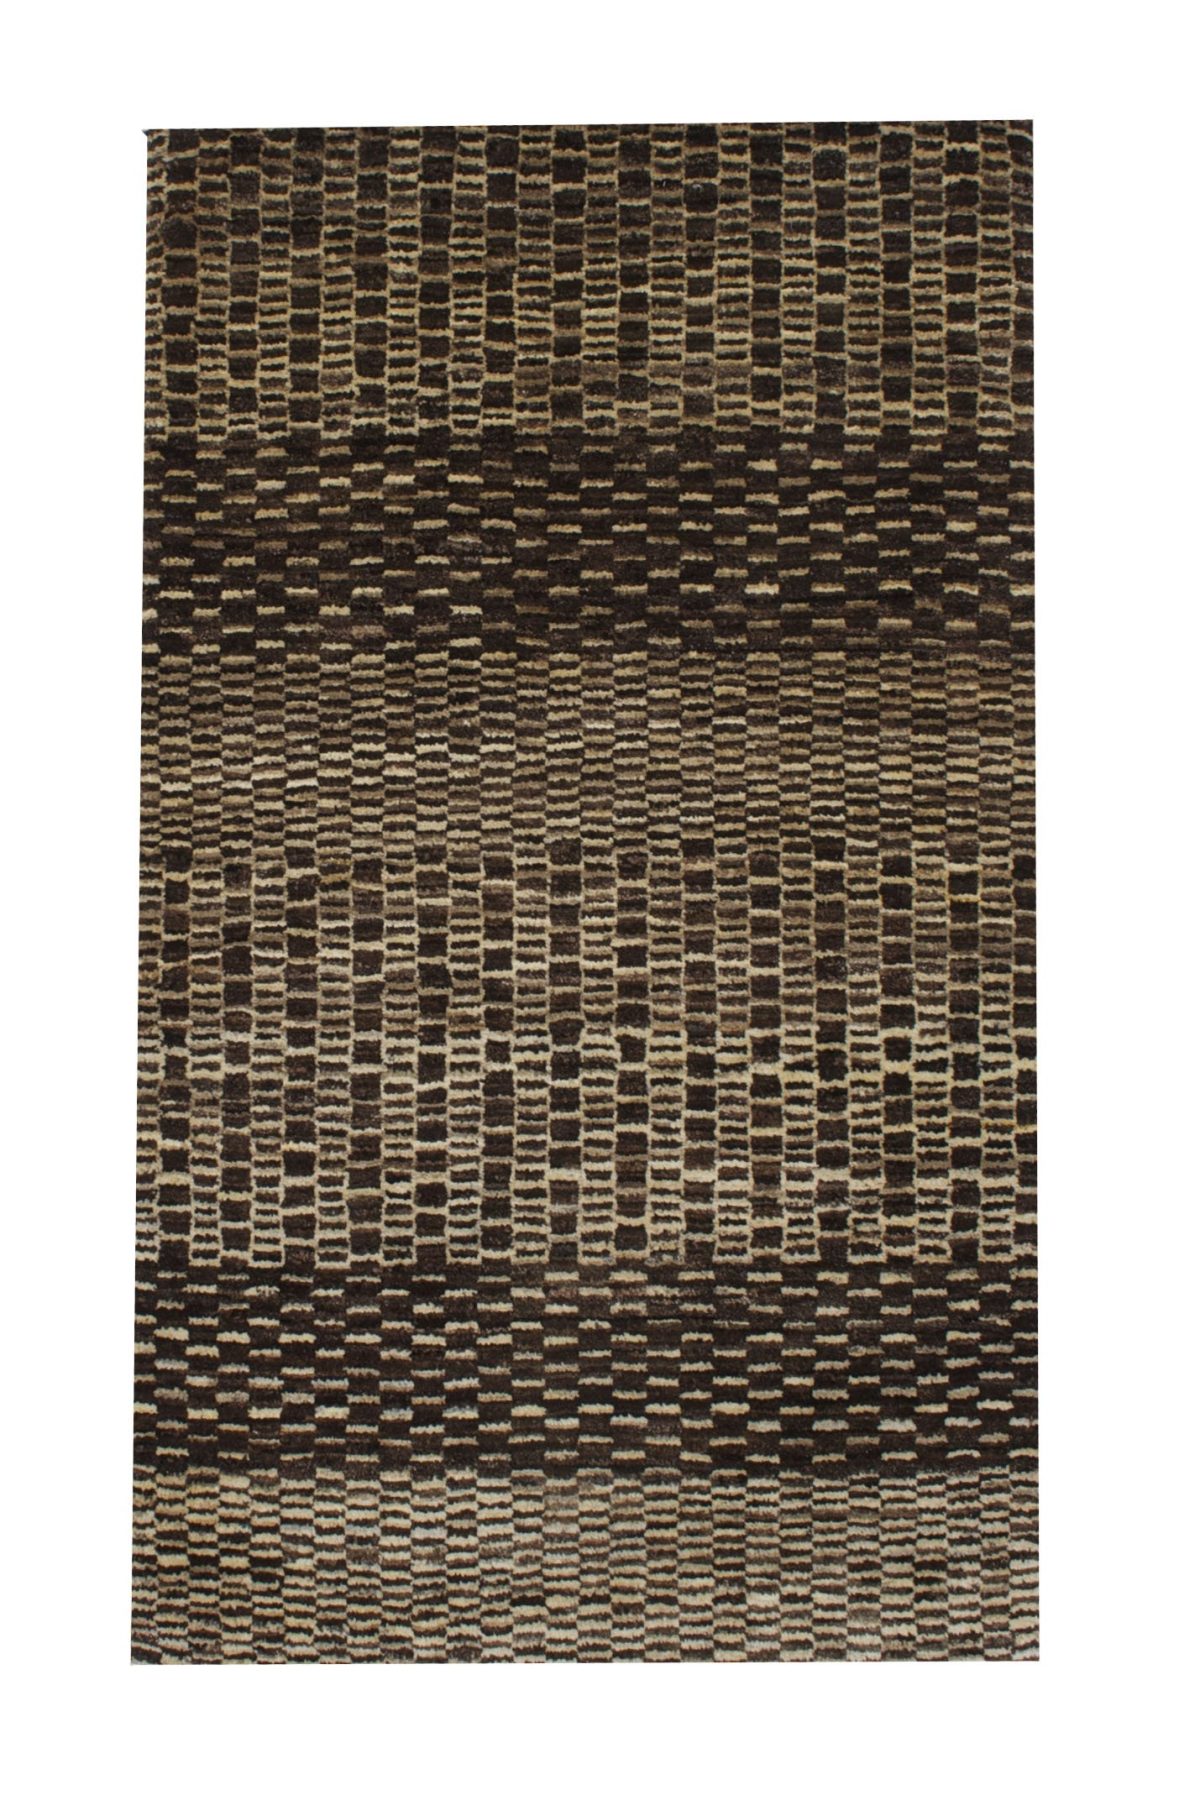 Gabbeh 2' 7" x 4' Undyed Natural Wool Handmade Area Rug - Shabahang Royal Carpet